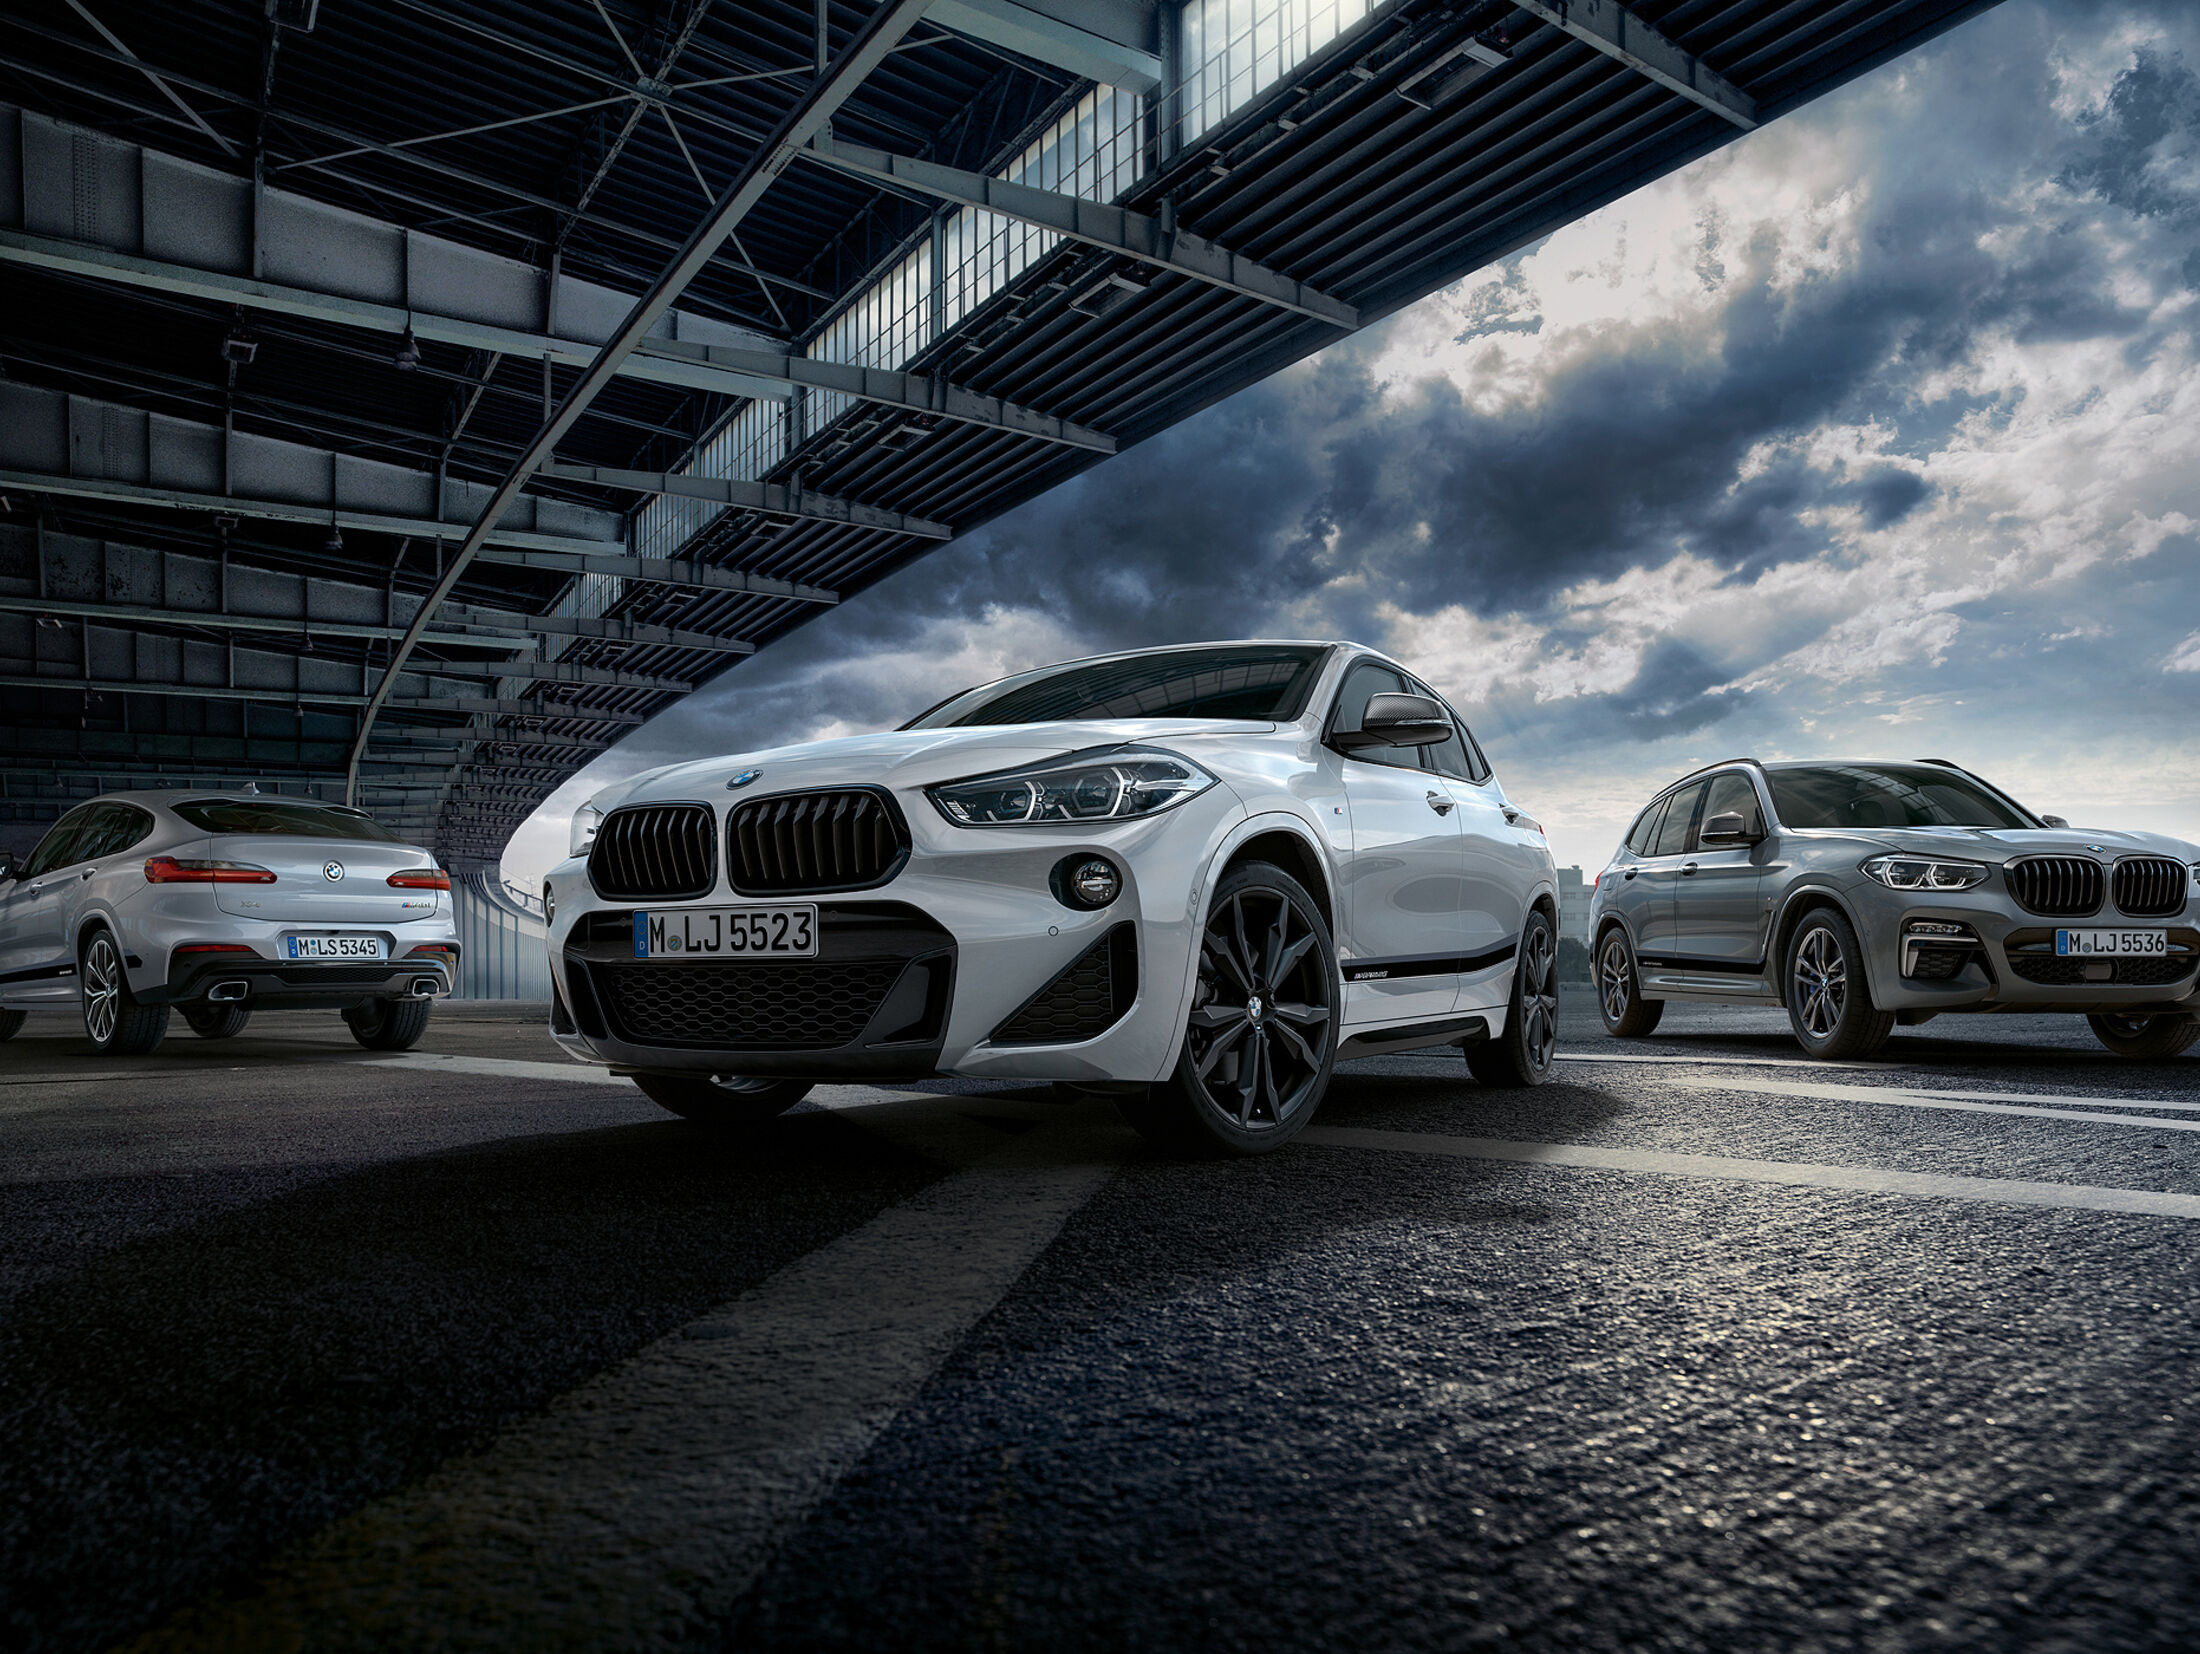 https://imgr1.auto-motor-und-sport.de/BMW-M-Performance-Parts-X-Modelle-2018-jsonLd4x3-b07bb659-1149670.jpg